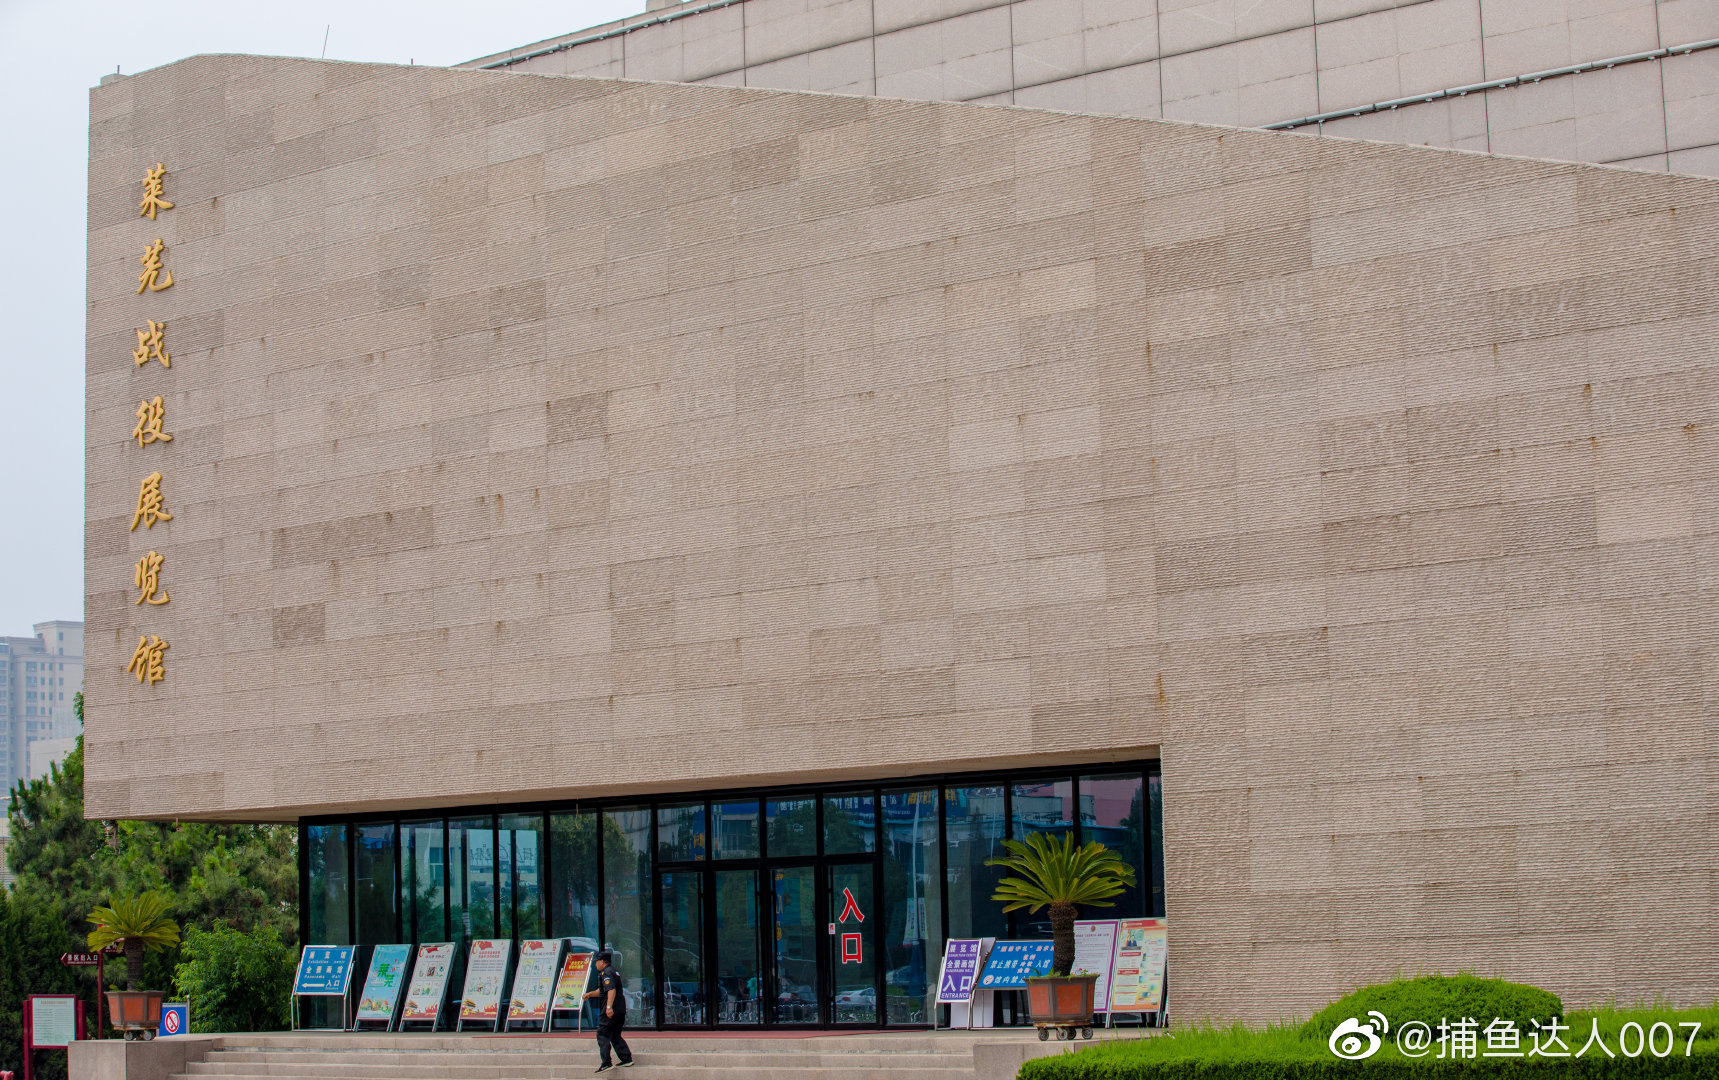 莱阳市政府门户网站 游在莱阳 莱阳市博物馆